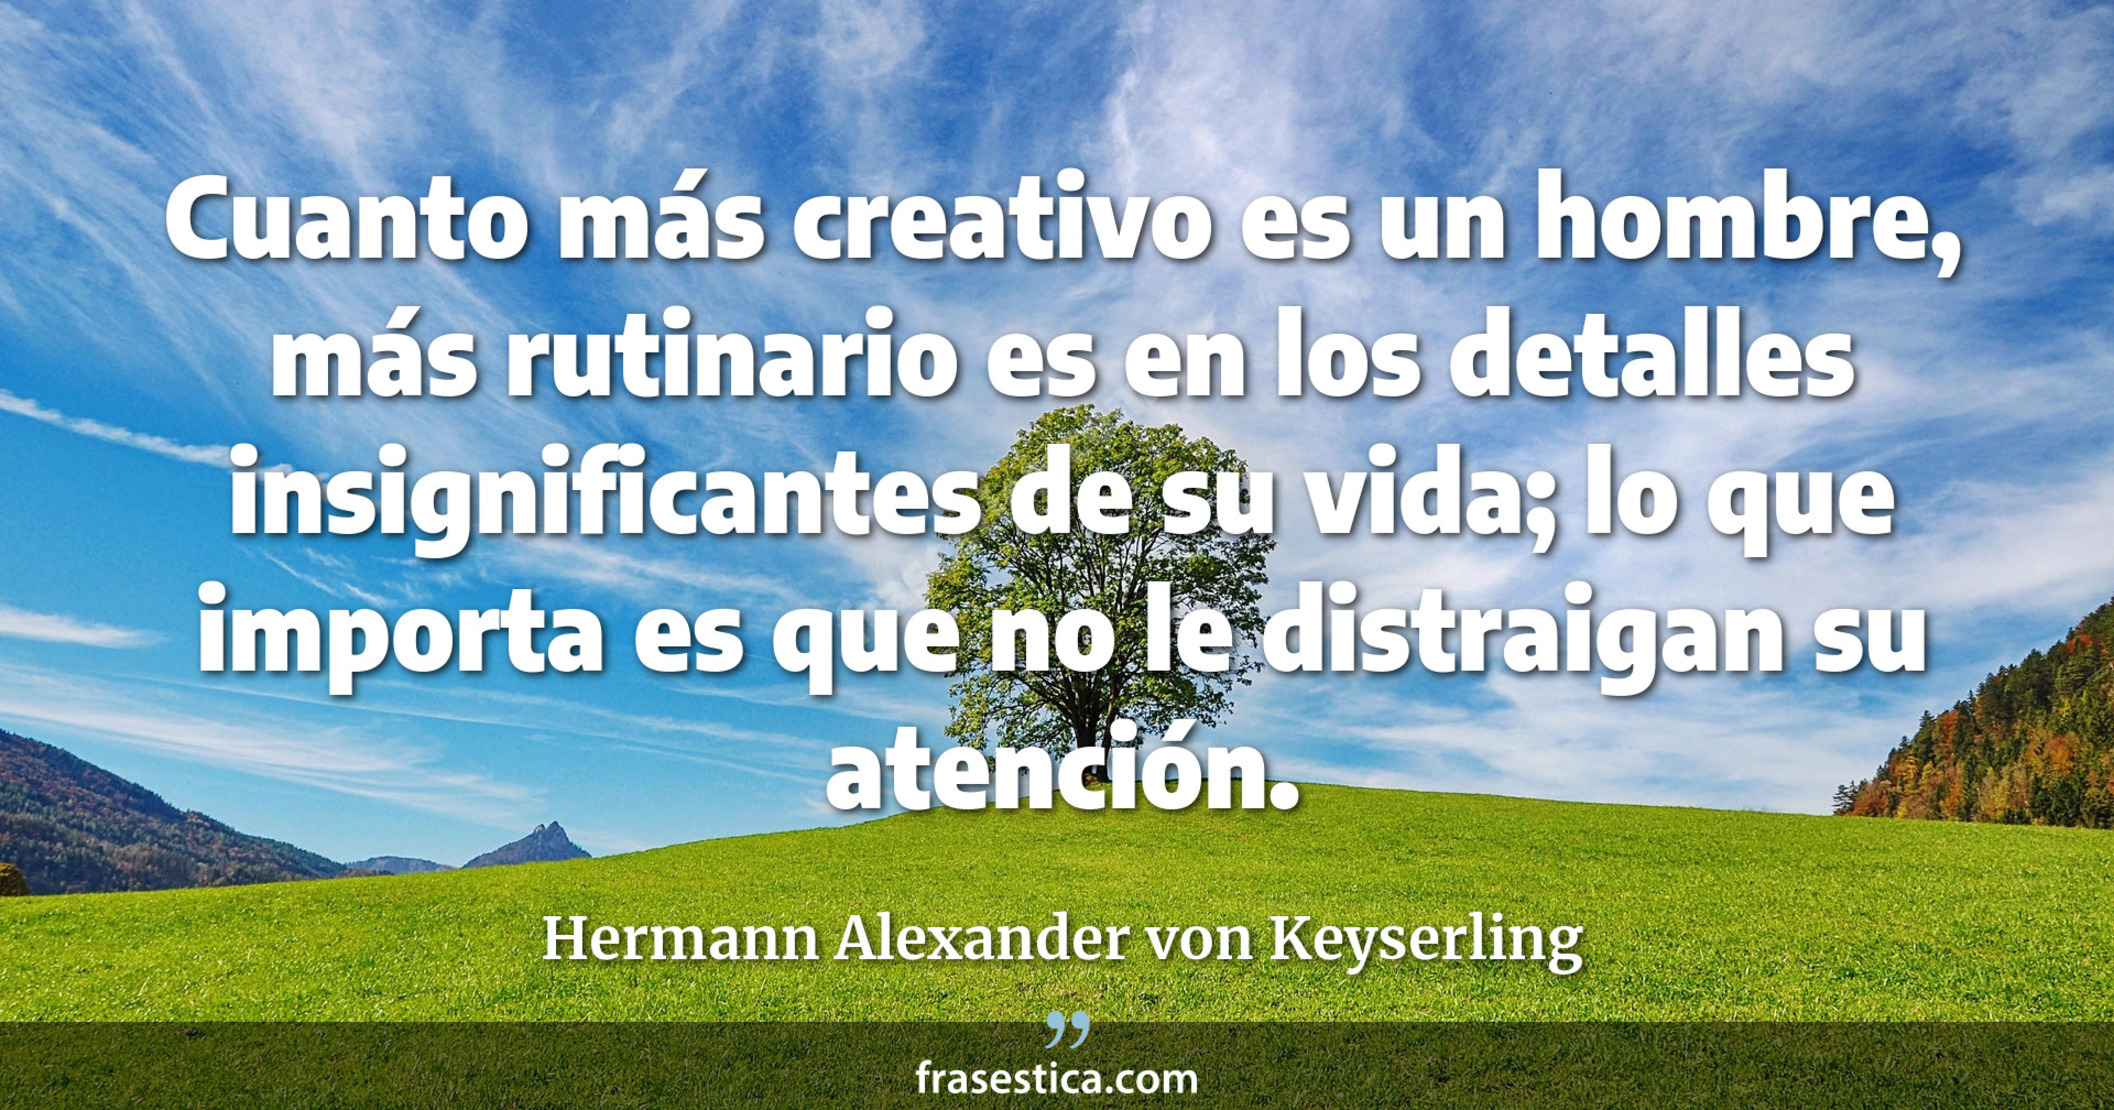 Cuanto más creativo es un hombre, más rutinario es en los detalles insignificantes de su vida; lo que importa es que no le distraigan su atención. - Hermann Alexander von Keyserling